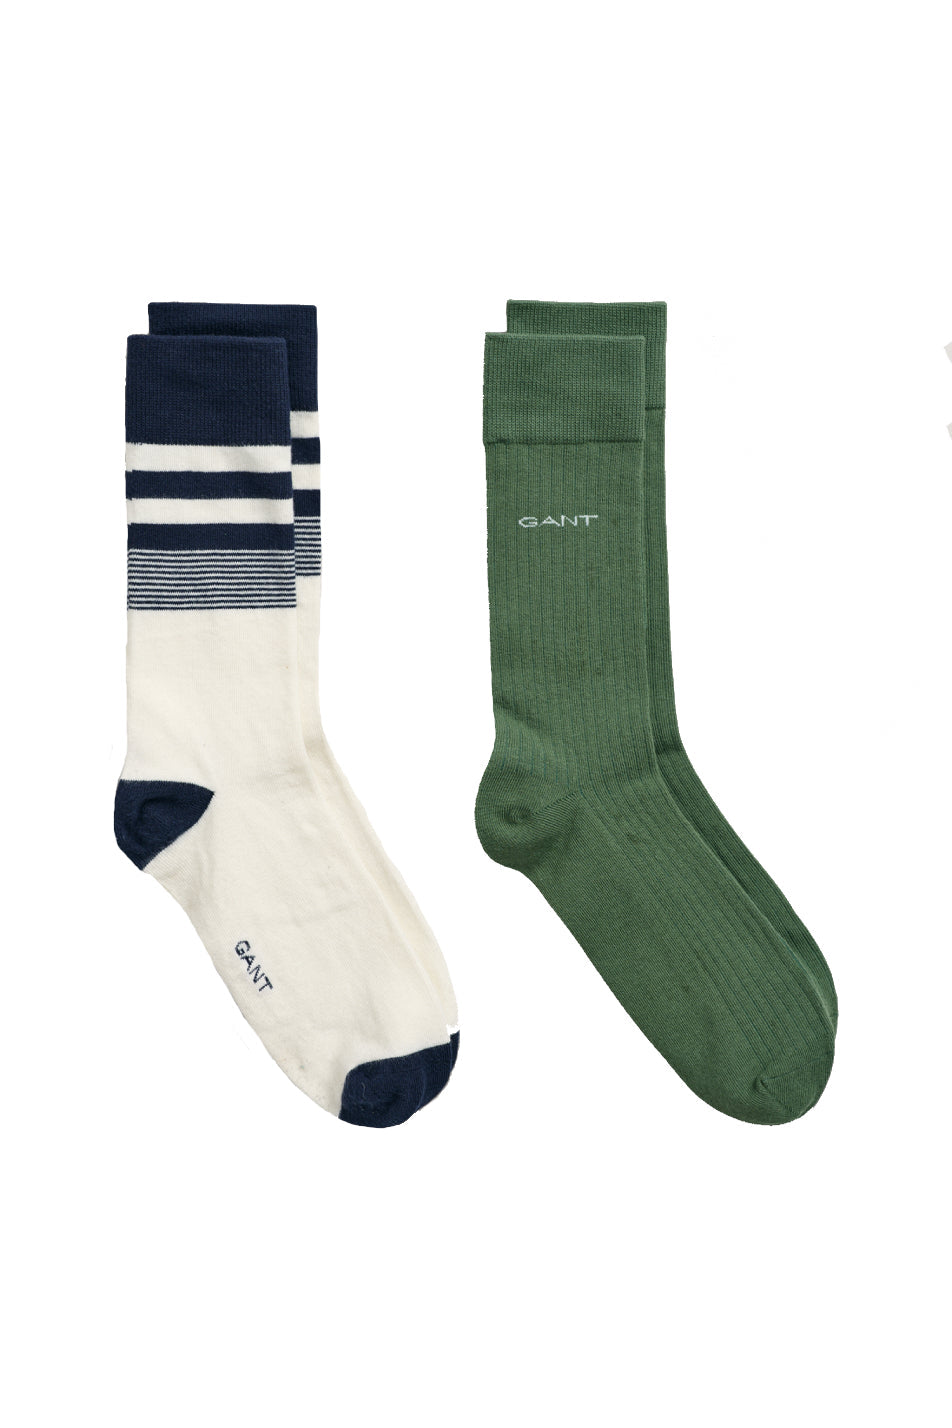 Gant 2 Pack Men's Stripe Socks